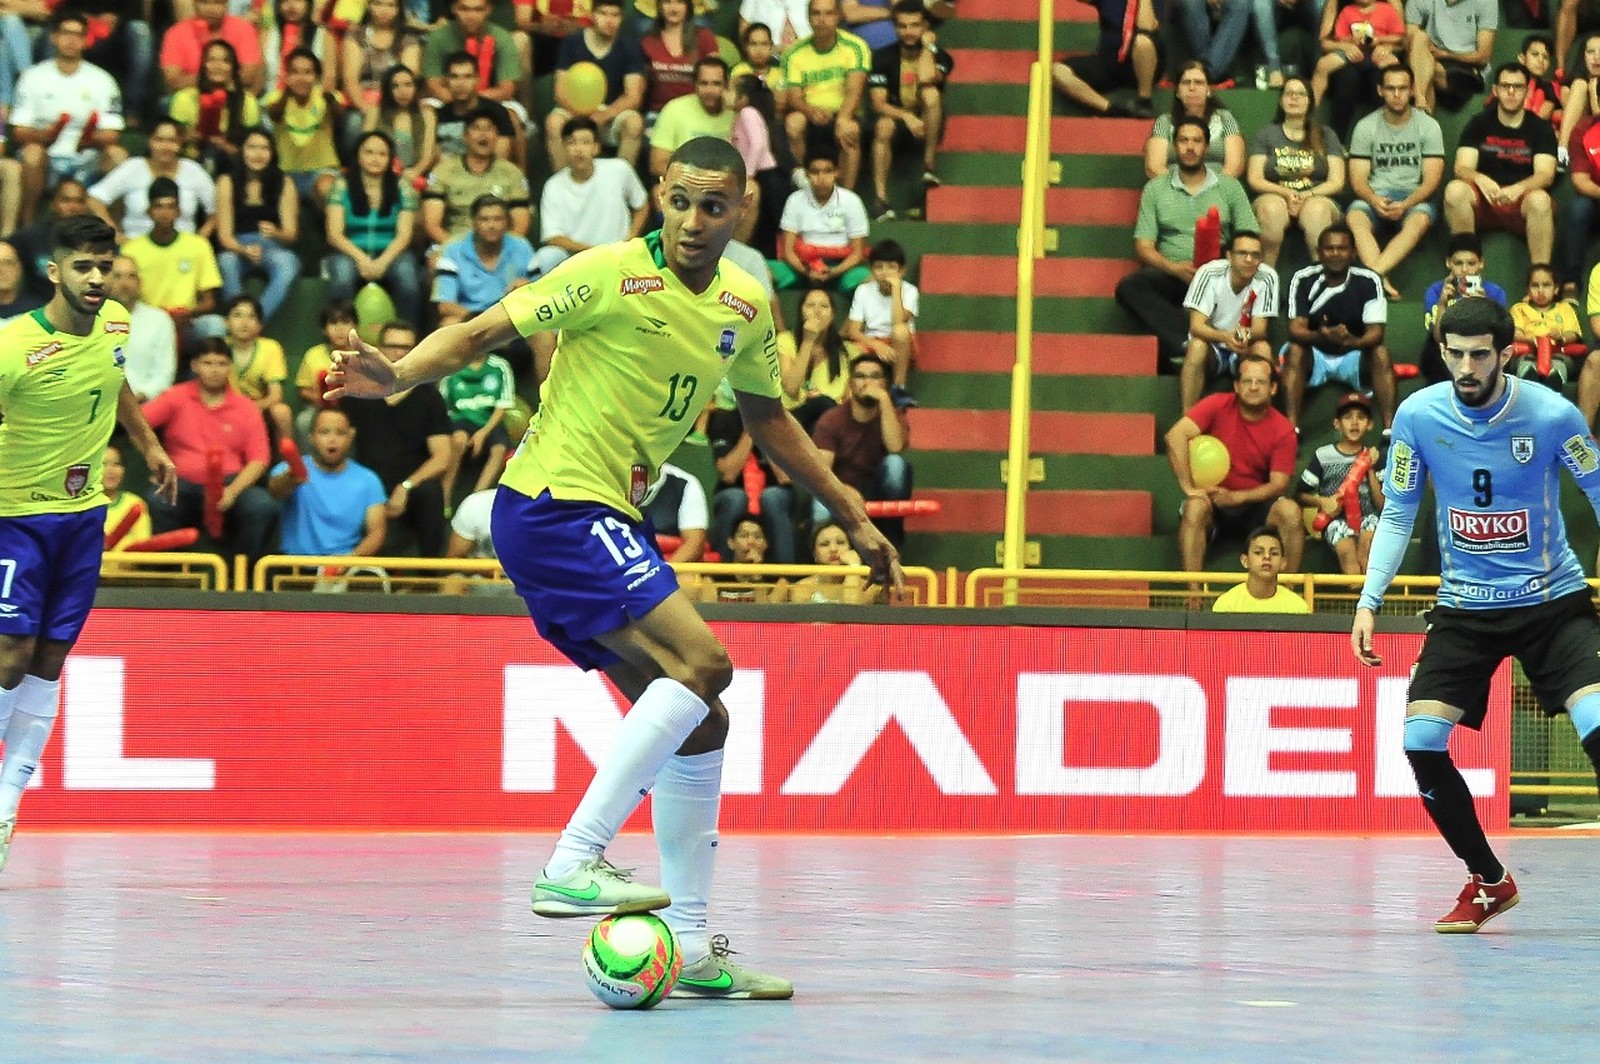 Estreante na seleção de futsal, Daniel Alves celebra gol da vitória: “Inimaginável” – LNF - Portal Oficial da Liga Nacional de Futsal